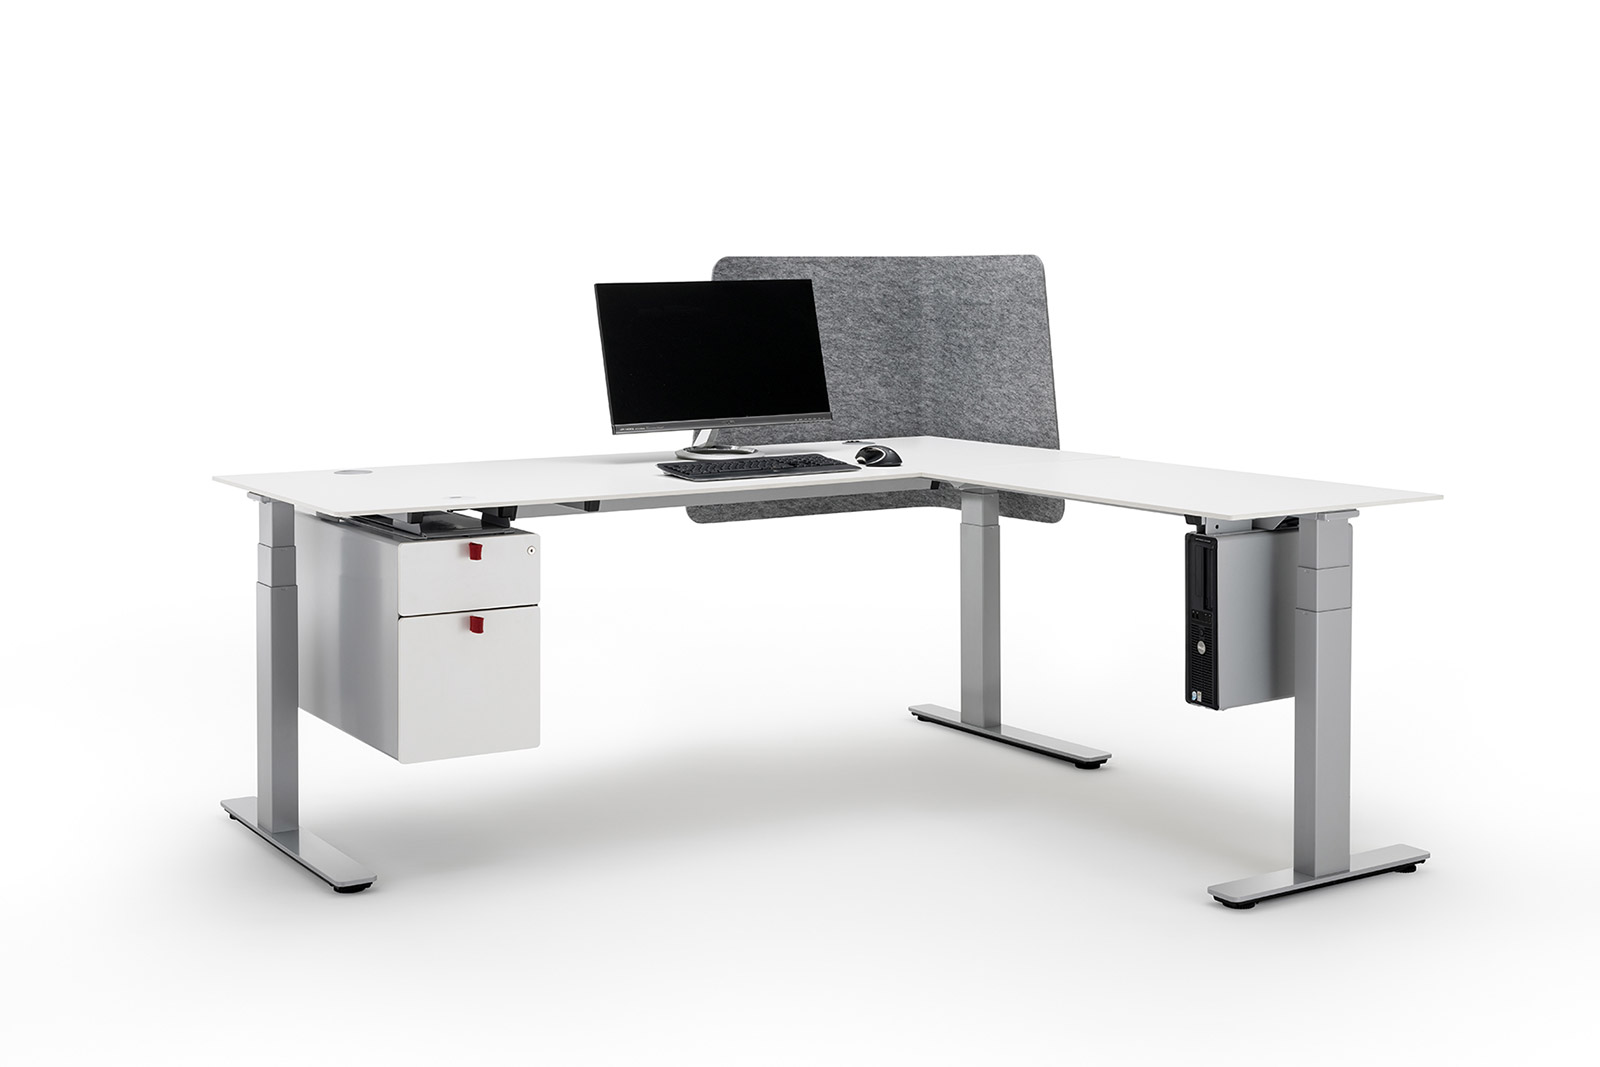 Den modulære opbygning af Officys bordstelsystemet fra Häfele giver maksimal fleksibilitet og tilpasning i forhold til de fleste kundeønsker.